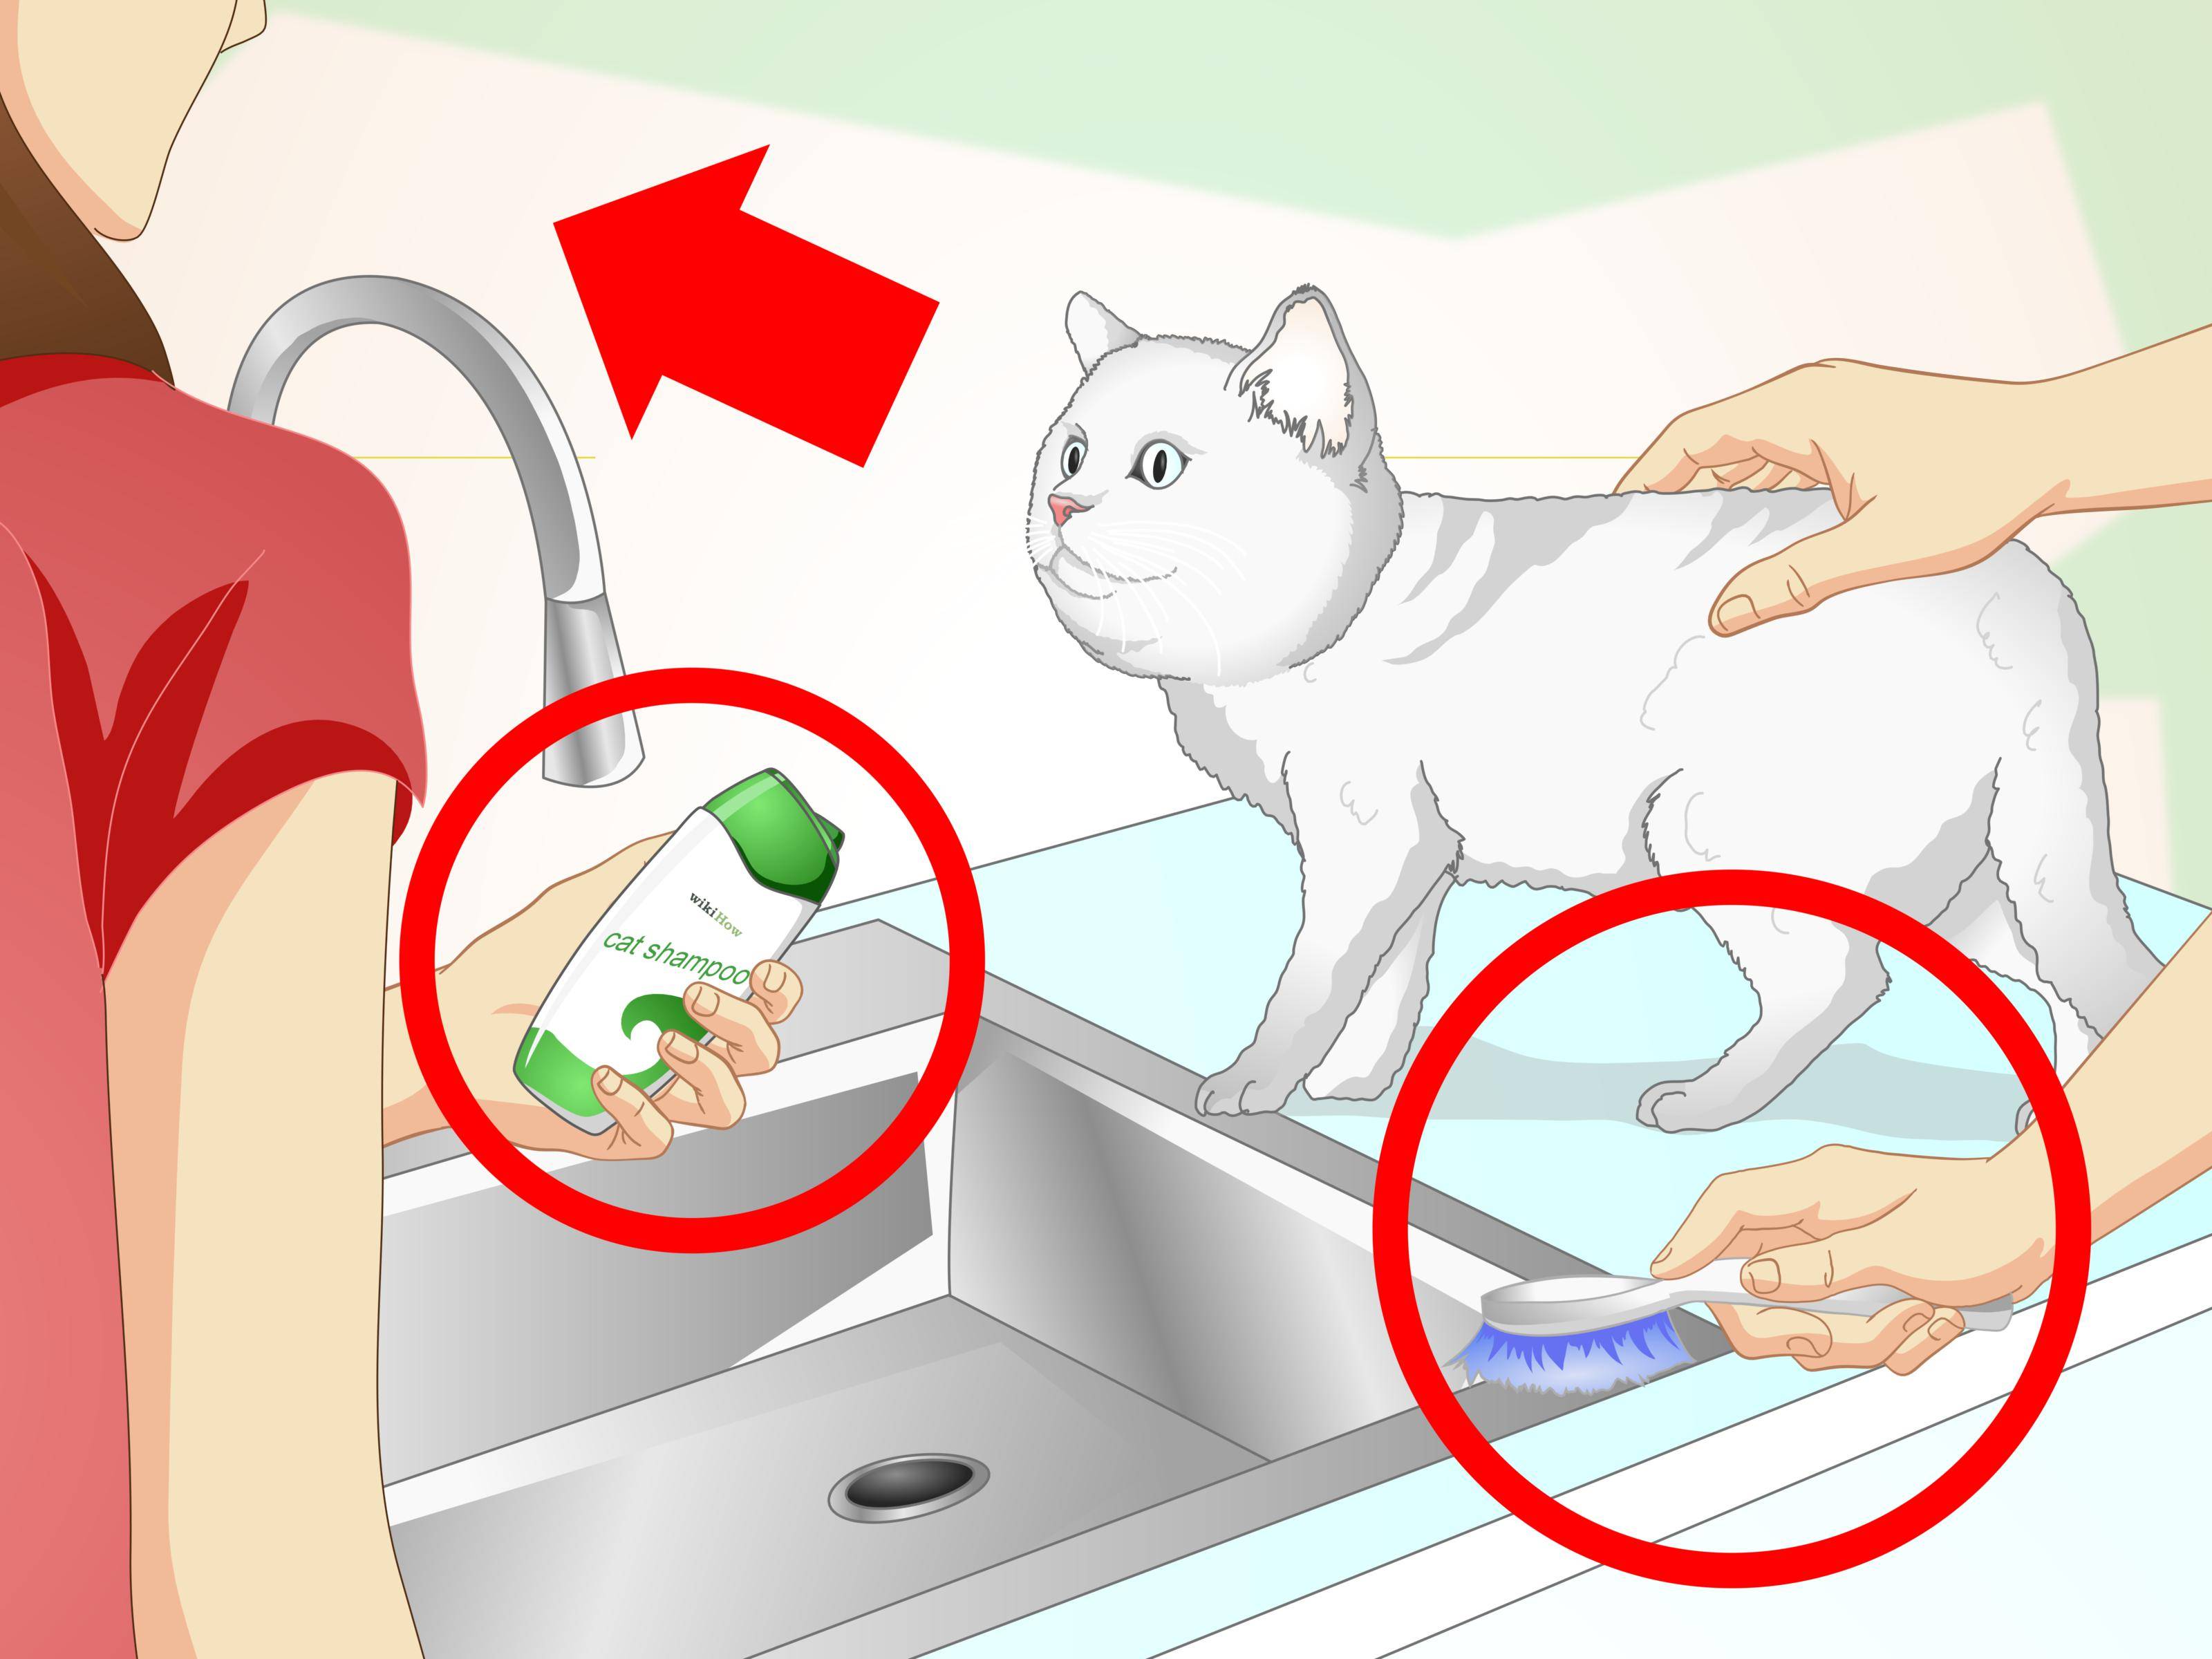 Как помыть кота: правила купания, если кот боится воды